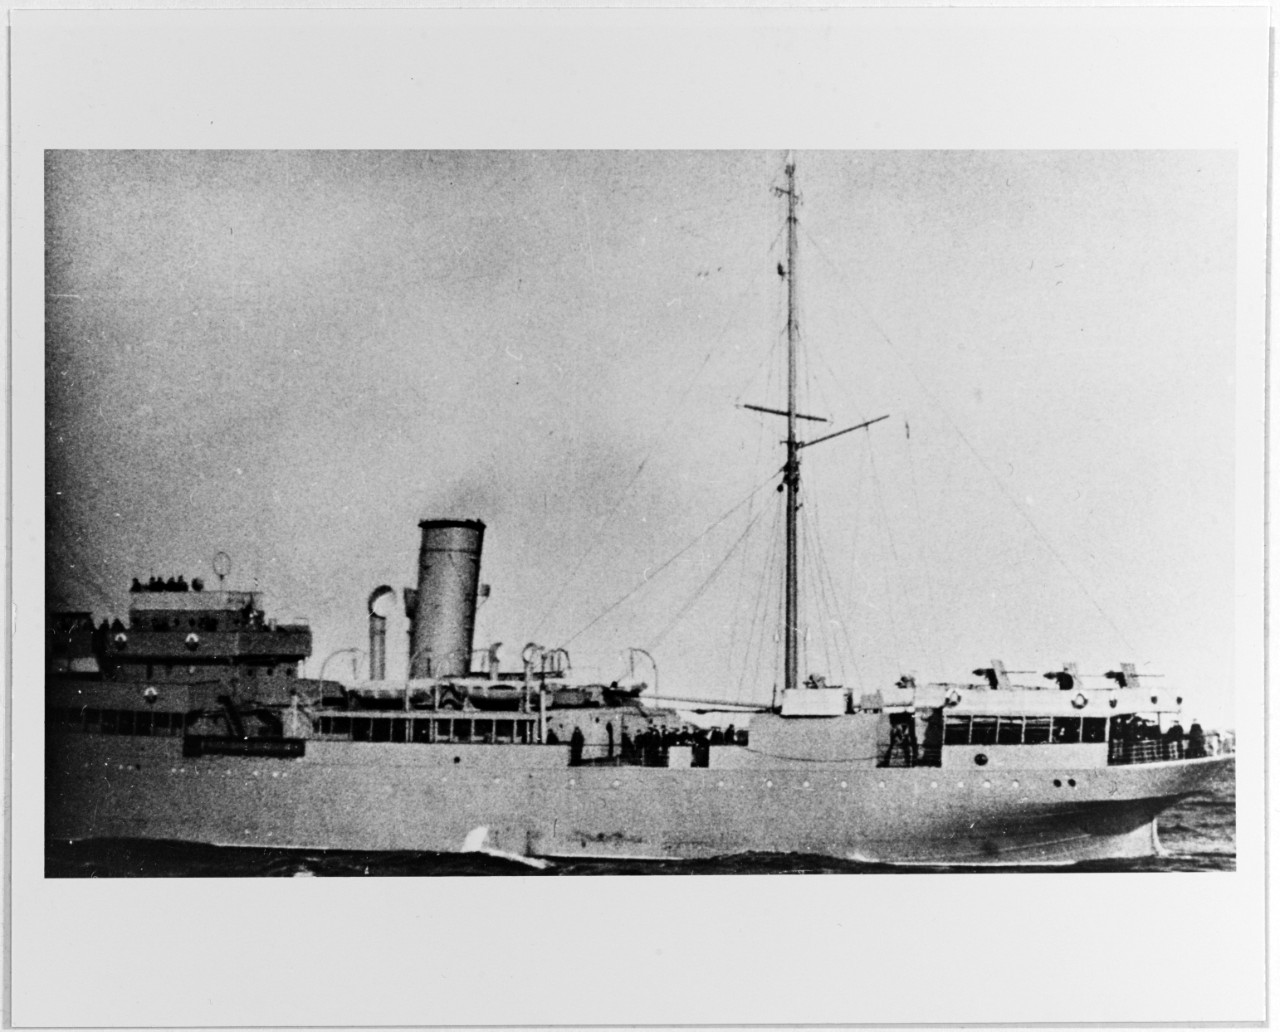 SMOLNYY (Soviet submarine tender, 1915-circa 1965)